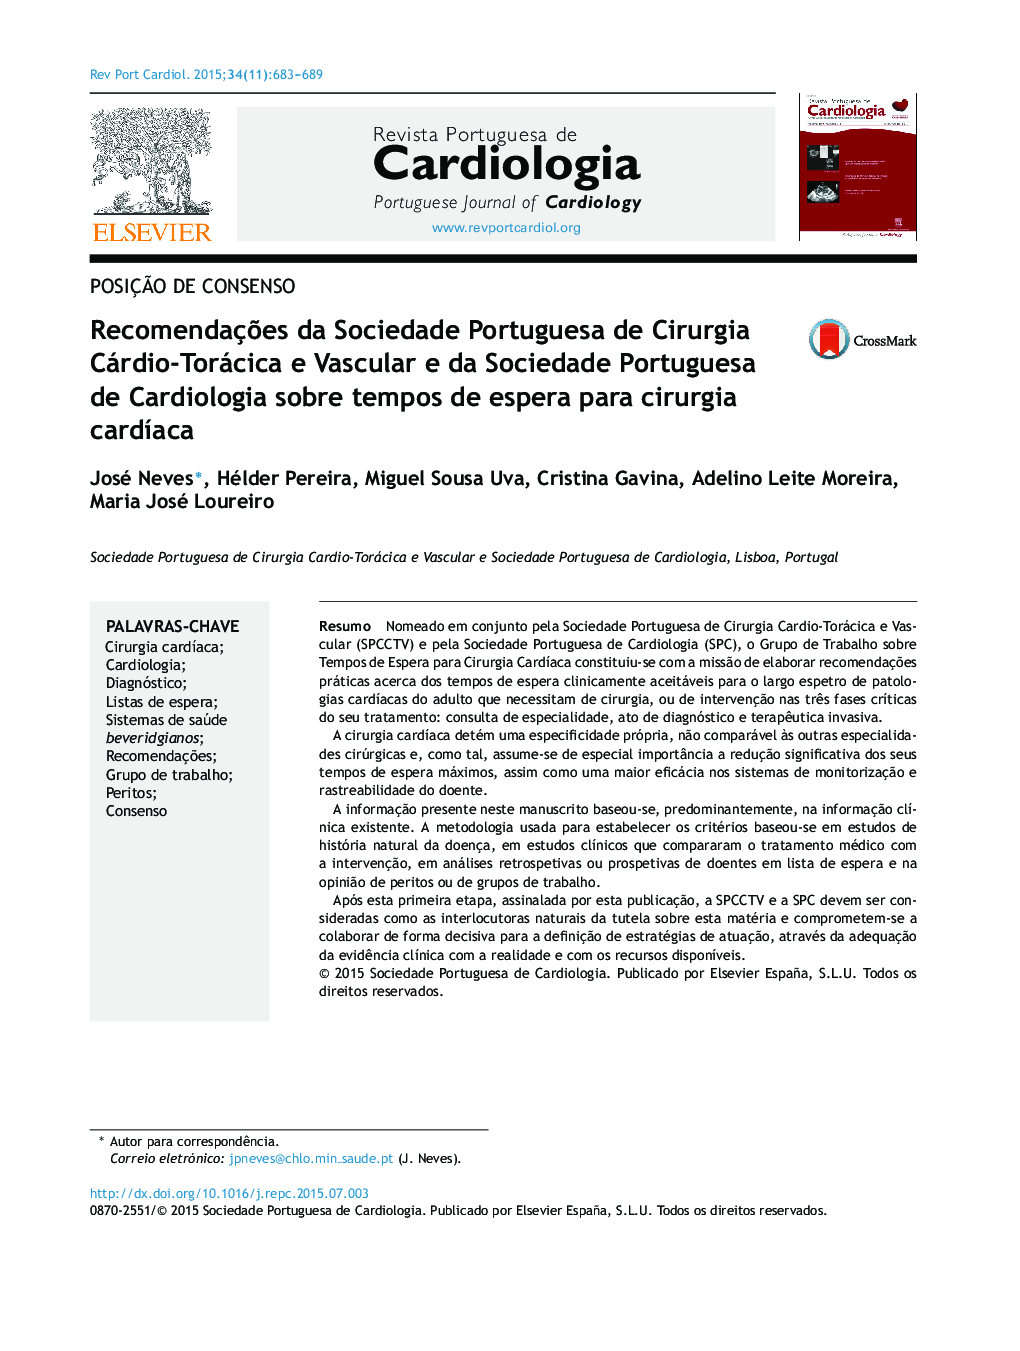 Recomendações da Sociedade Portuguesa de Cirurgia Cárdio‐Torácica e Vascular e da Sociedade Portuguesa de Cardiologia sobre tempos de espera para cirurgia cardíaca